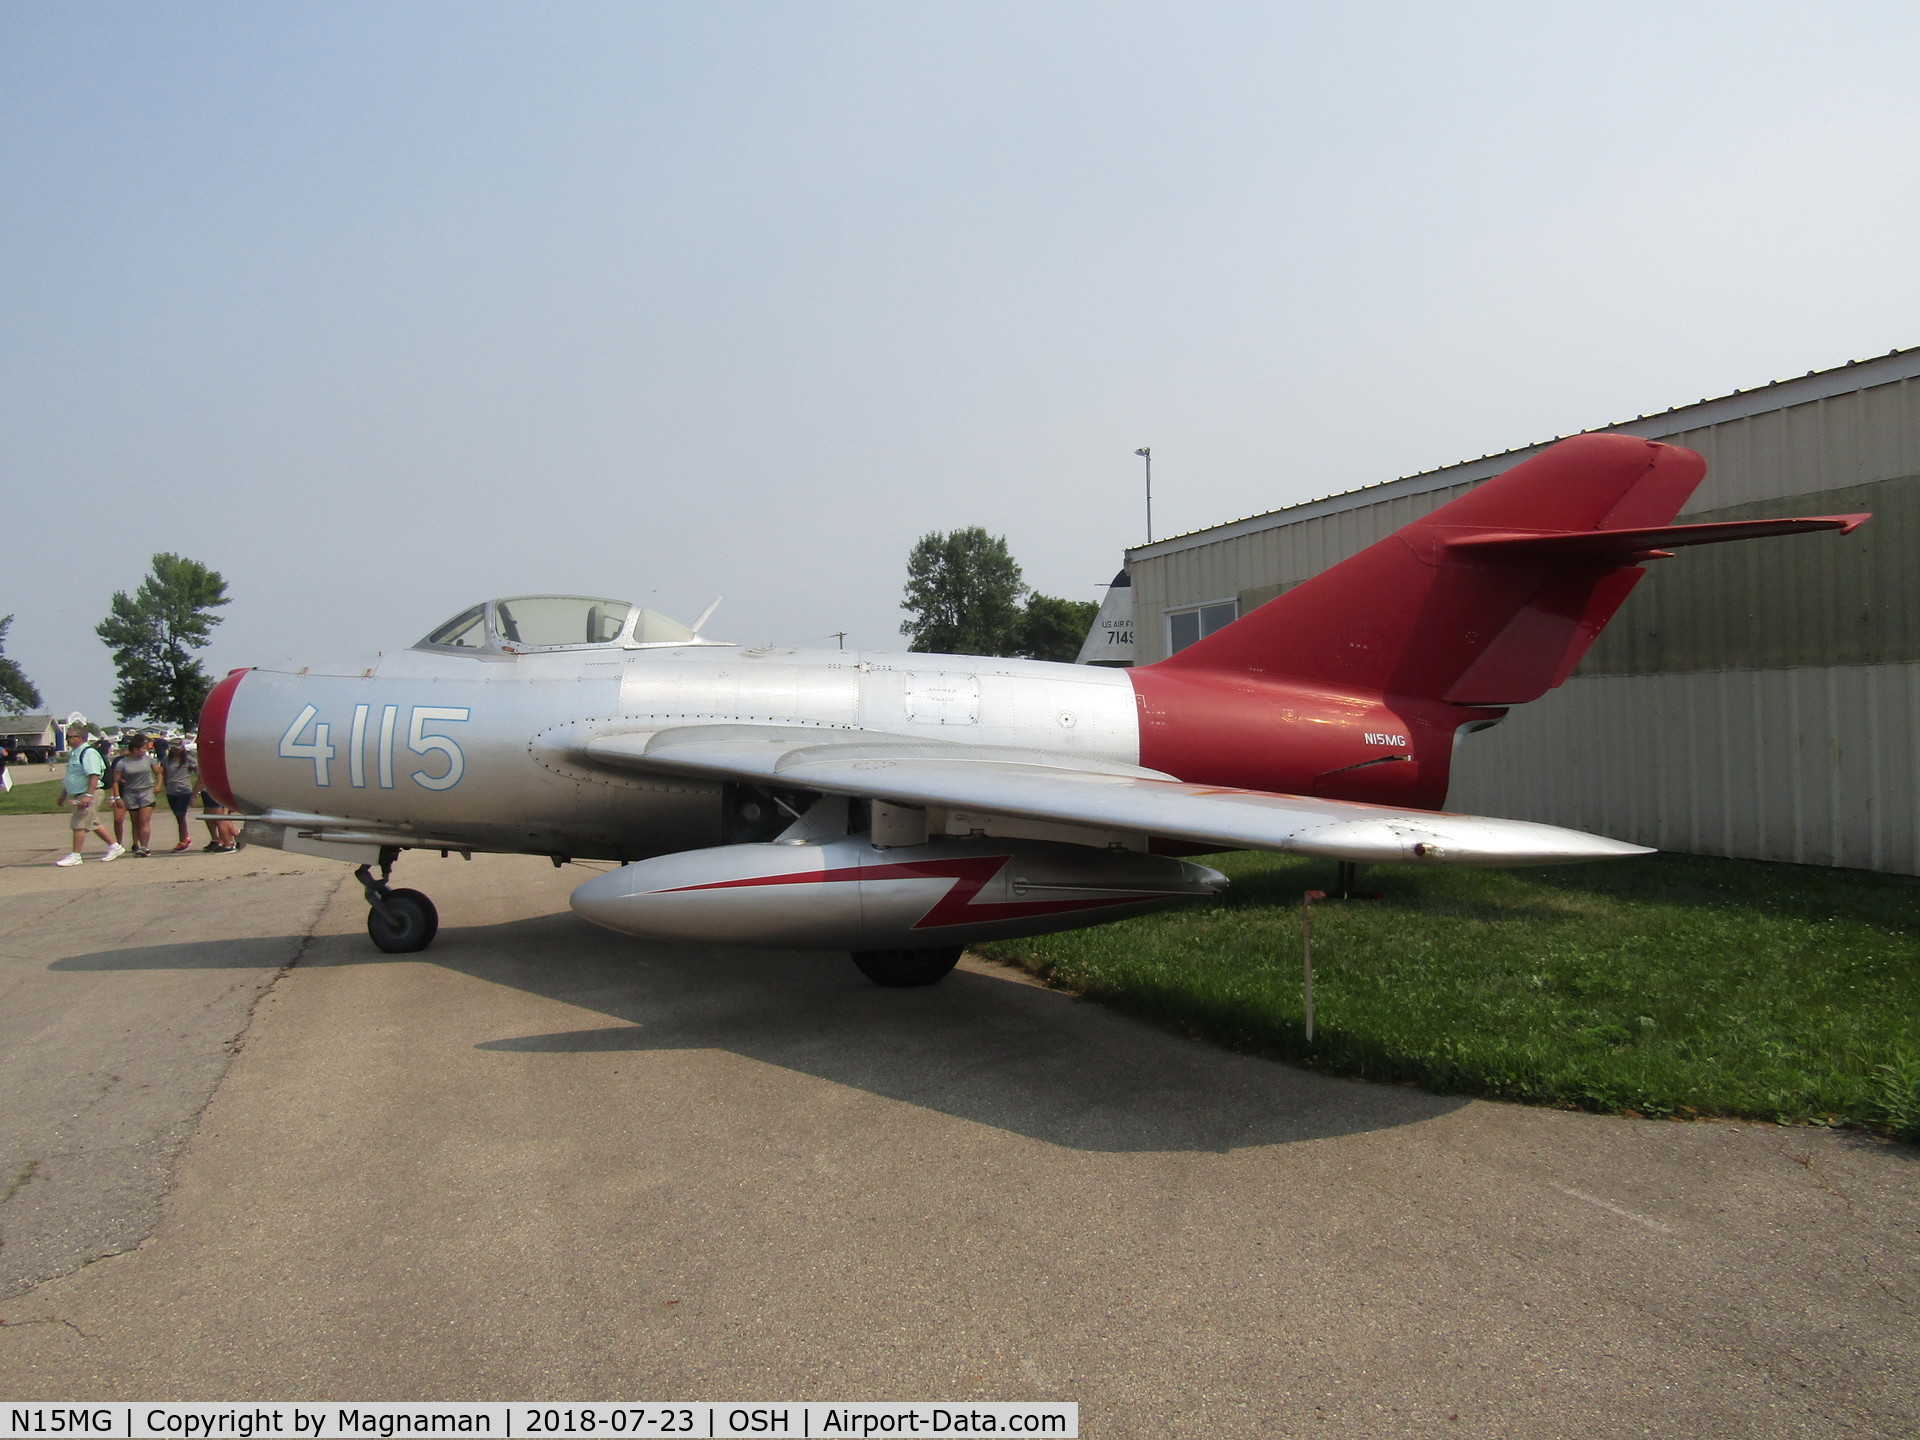 N15MG, 1954 Mikoyan-Gurevich MiG-15bis C/N 1411, at EAA 18